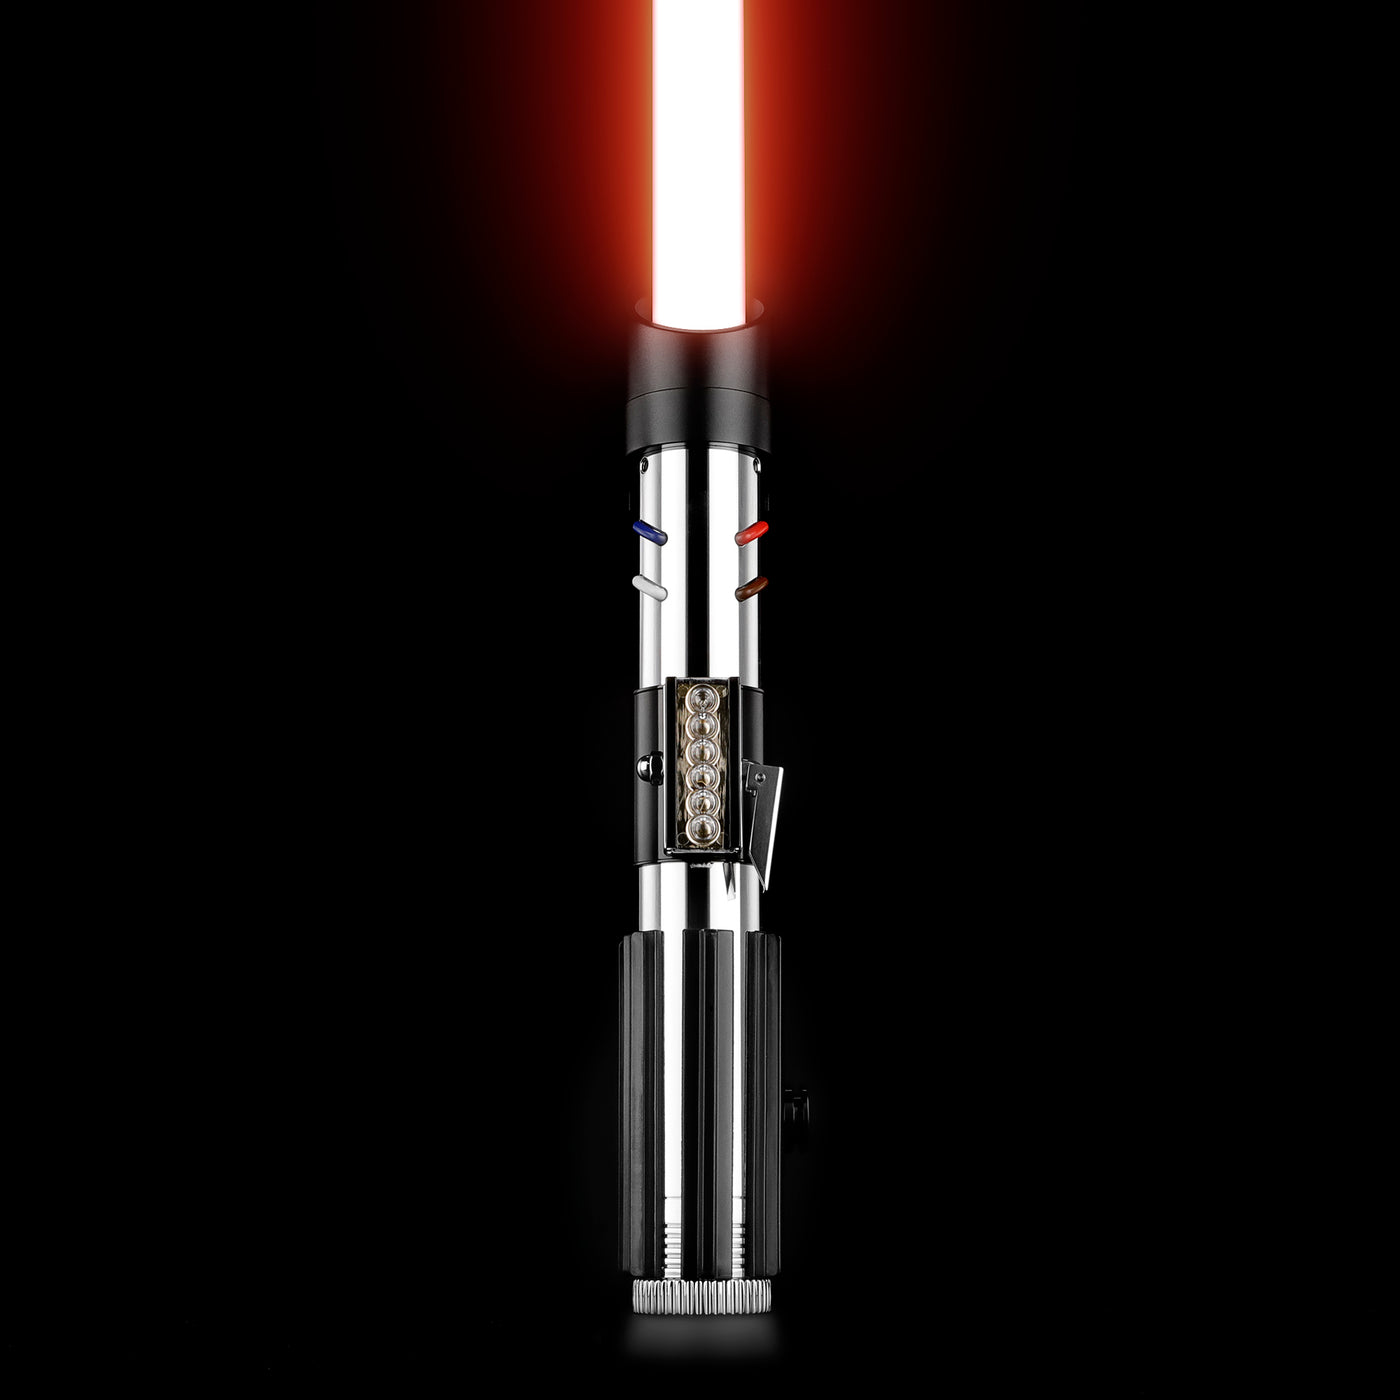 Darth Variant - KenJo Sabers - Star Wars Lightsaber replica Jedi Sith - Best sabershop Europe - Nederland light sabers kopen -